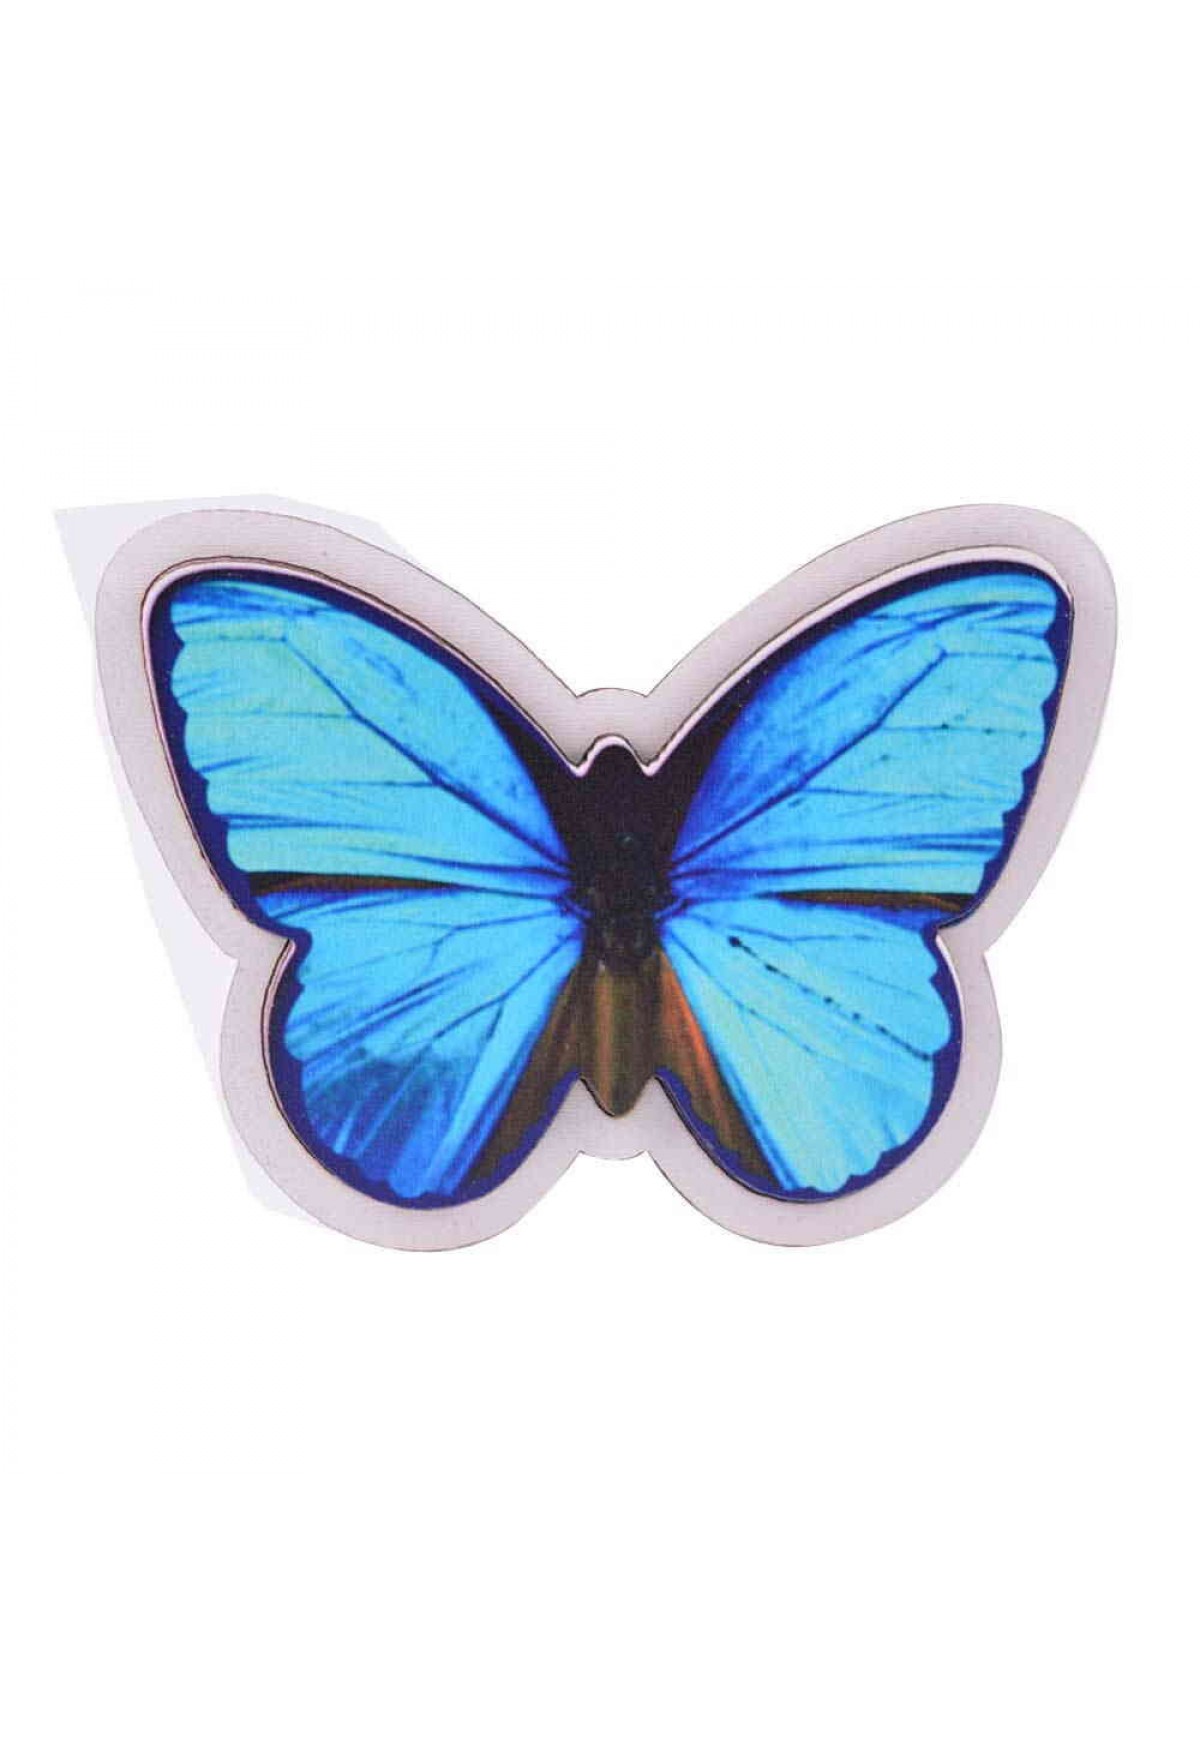 Kelebek Temalı 3D Resimli Ahşap Magnet